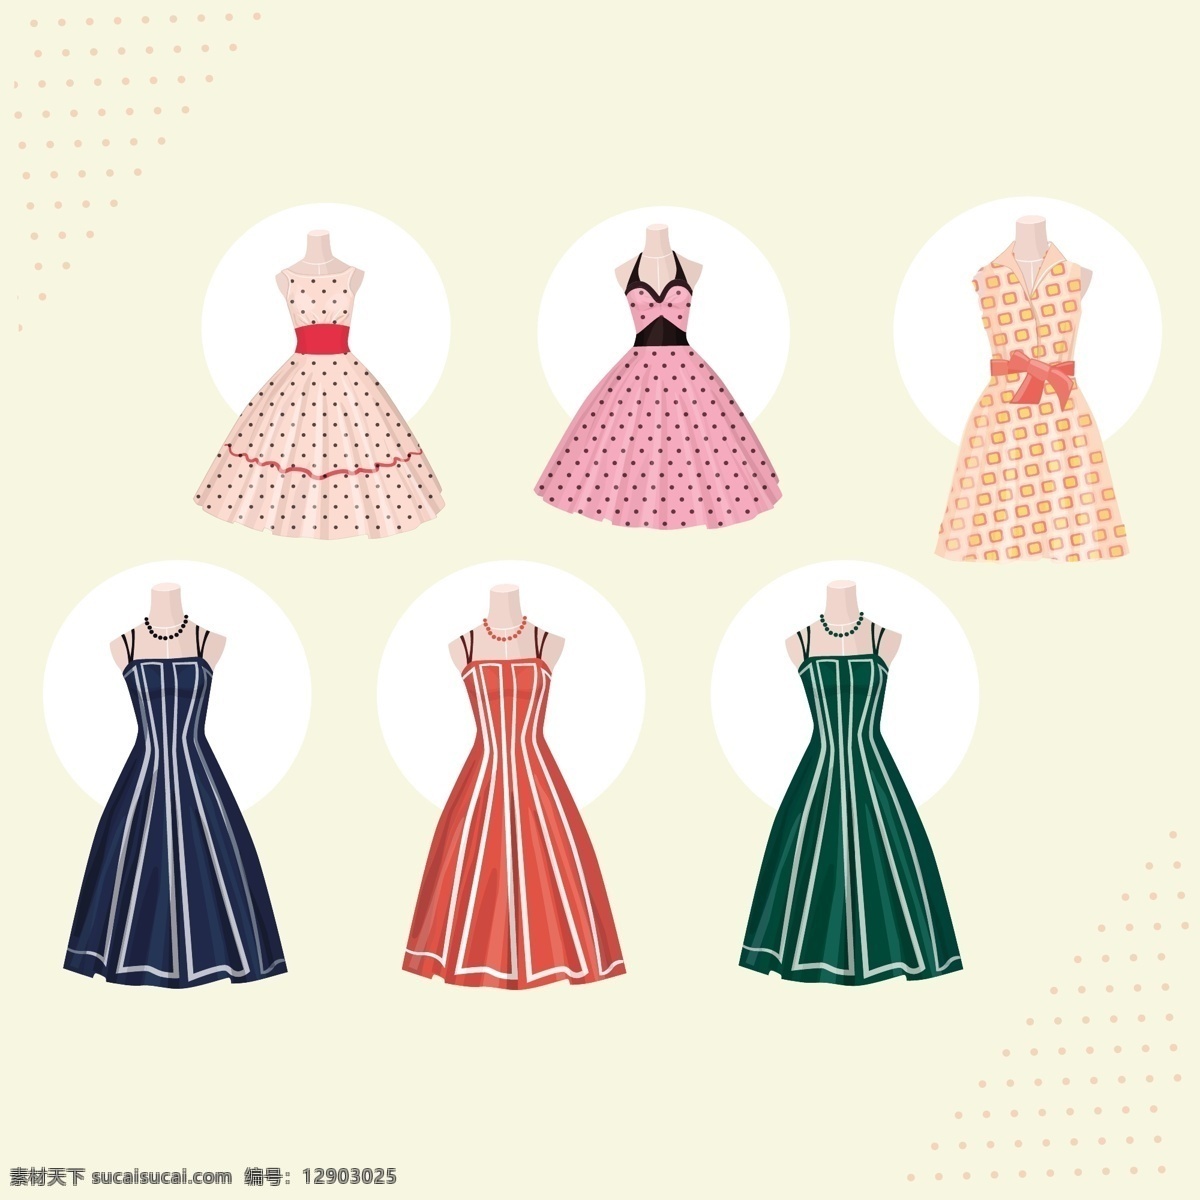 复古连衣裙 复古 时尚 服装 优雅 服饰 精品 风格 裙子 集合 连衣裙 五十年代